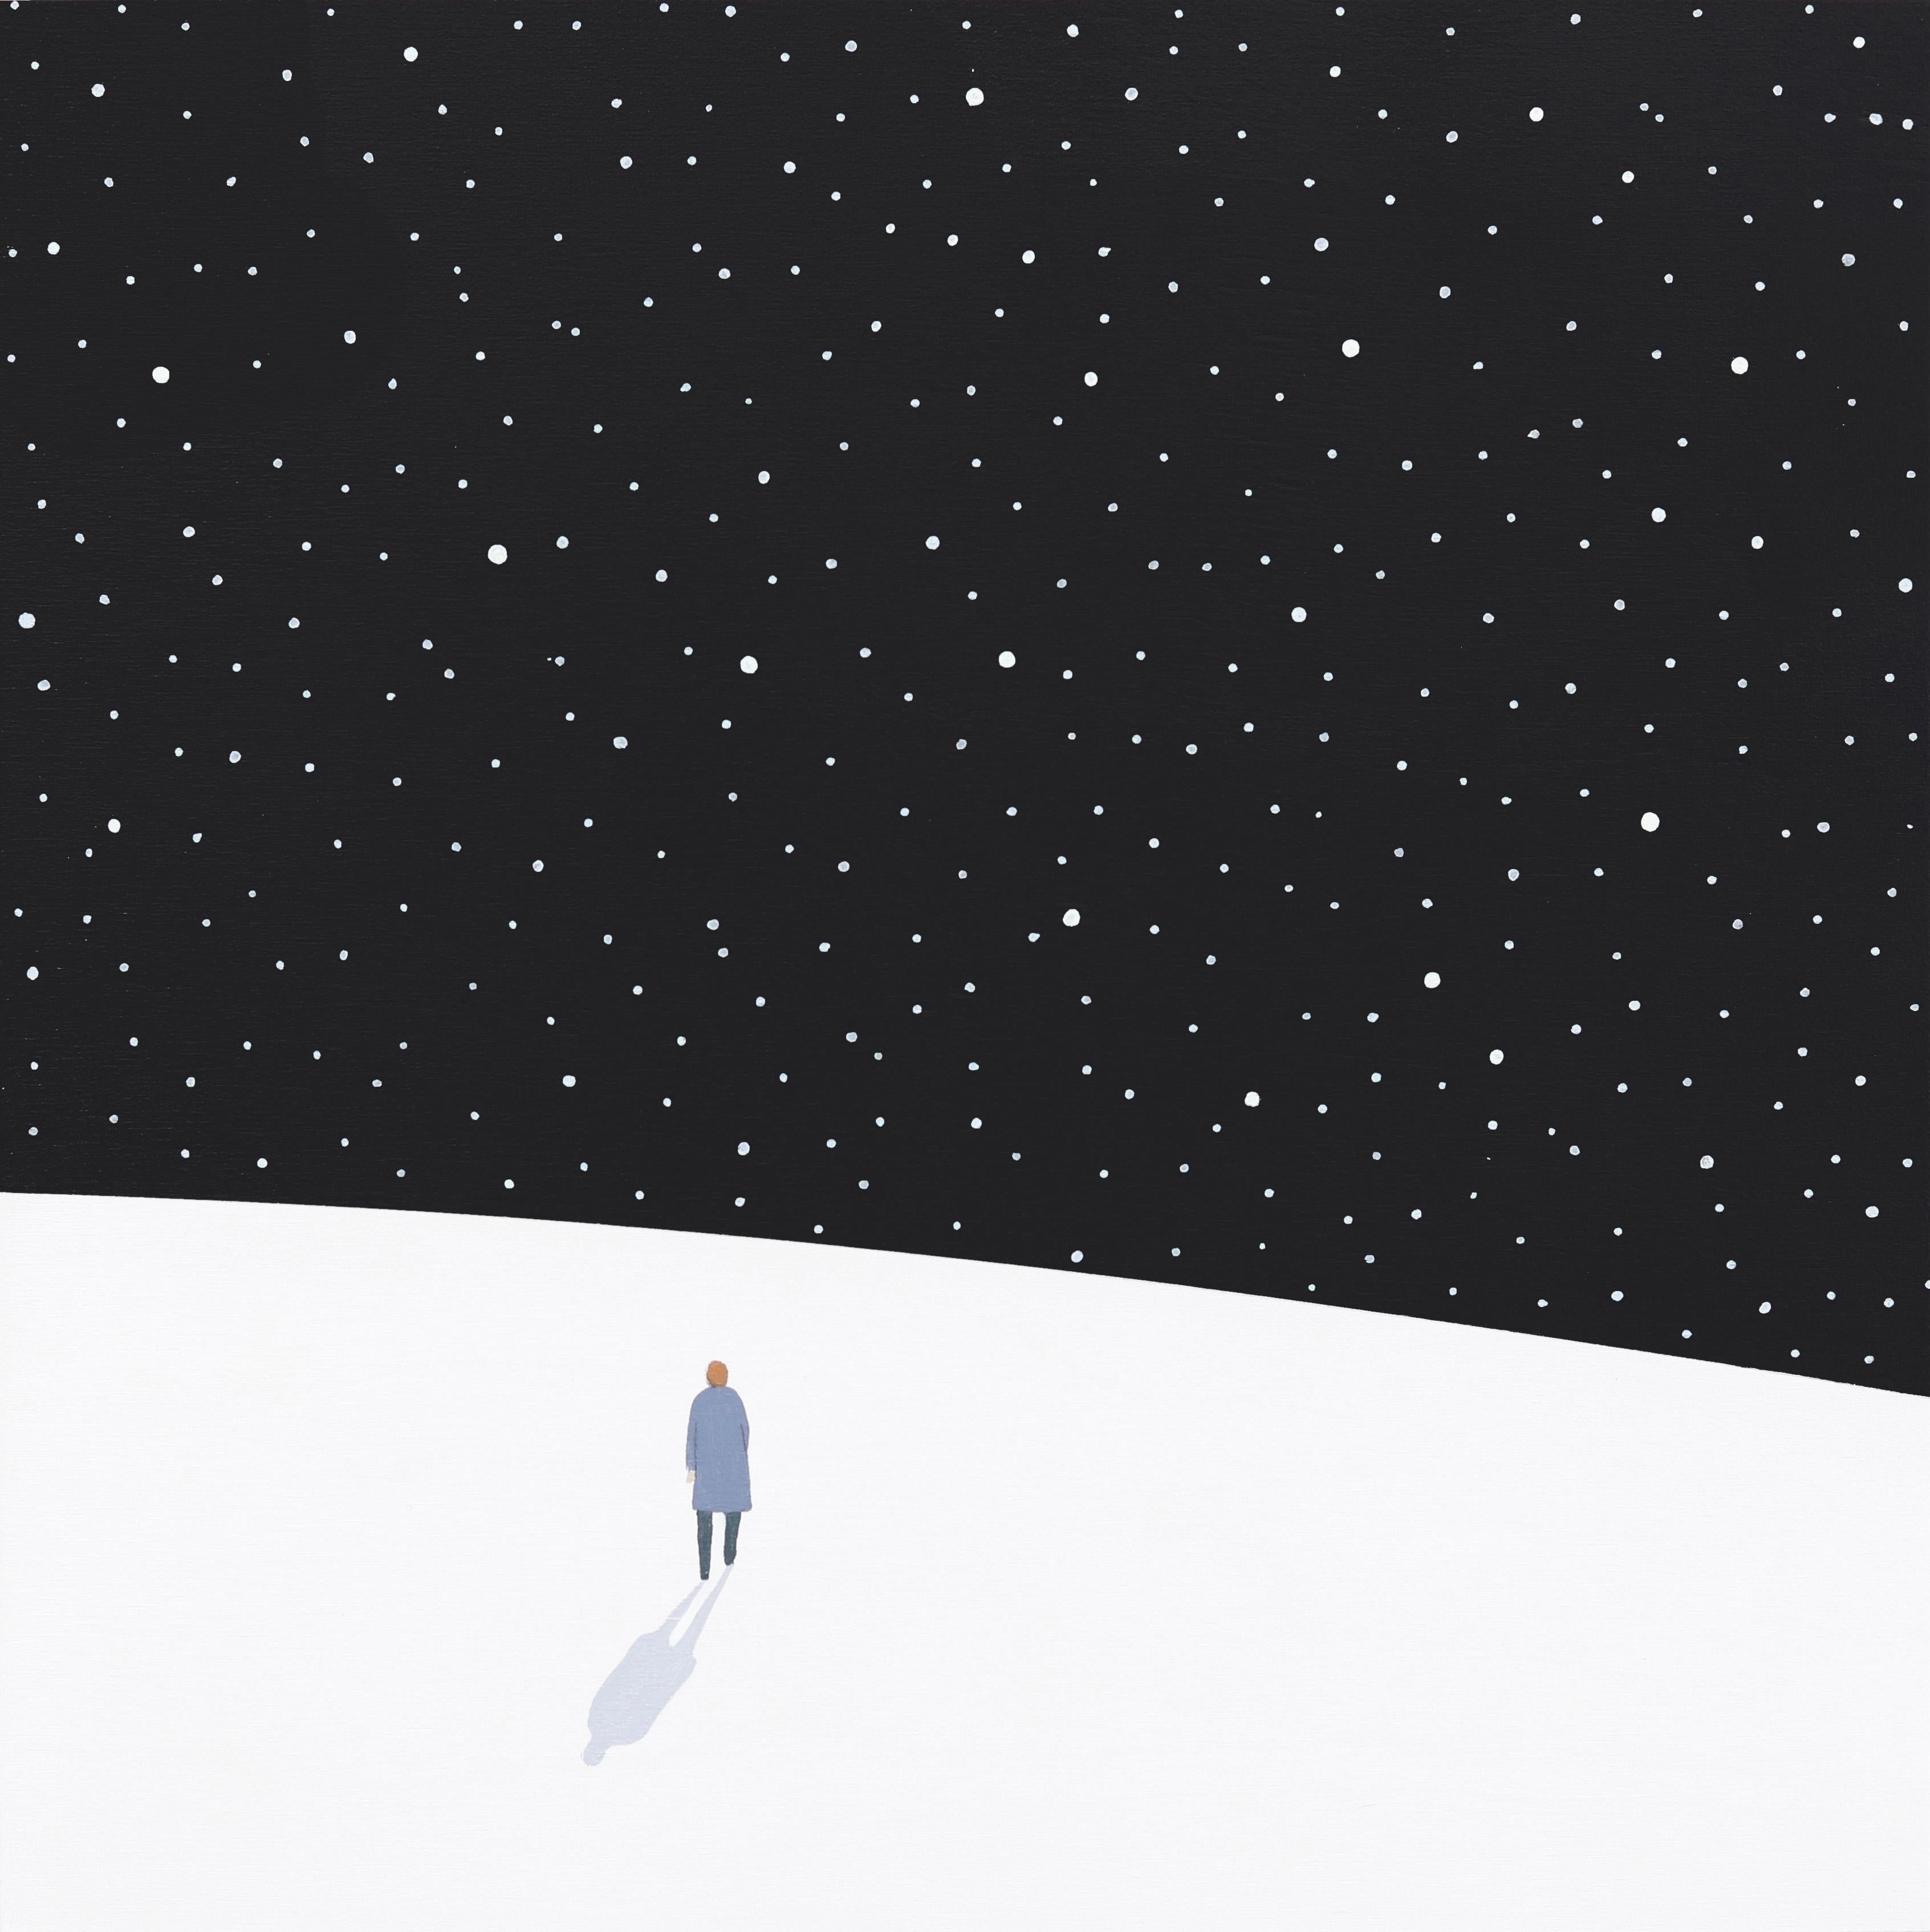 Mike Gough Landscape Painting – Into The Dark – Minimalistisches szenisches Landschaftsgemälde in der Nacht